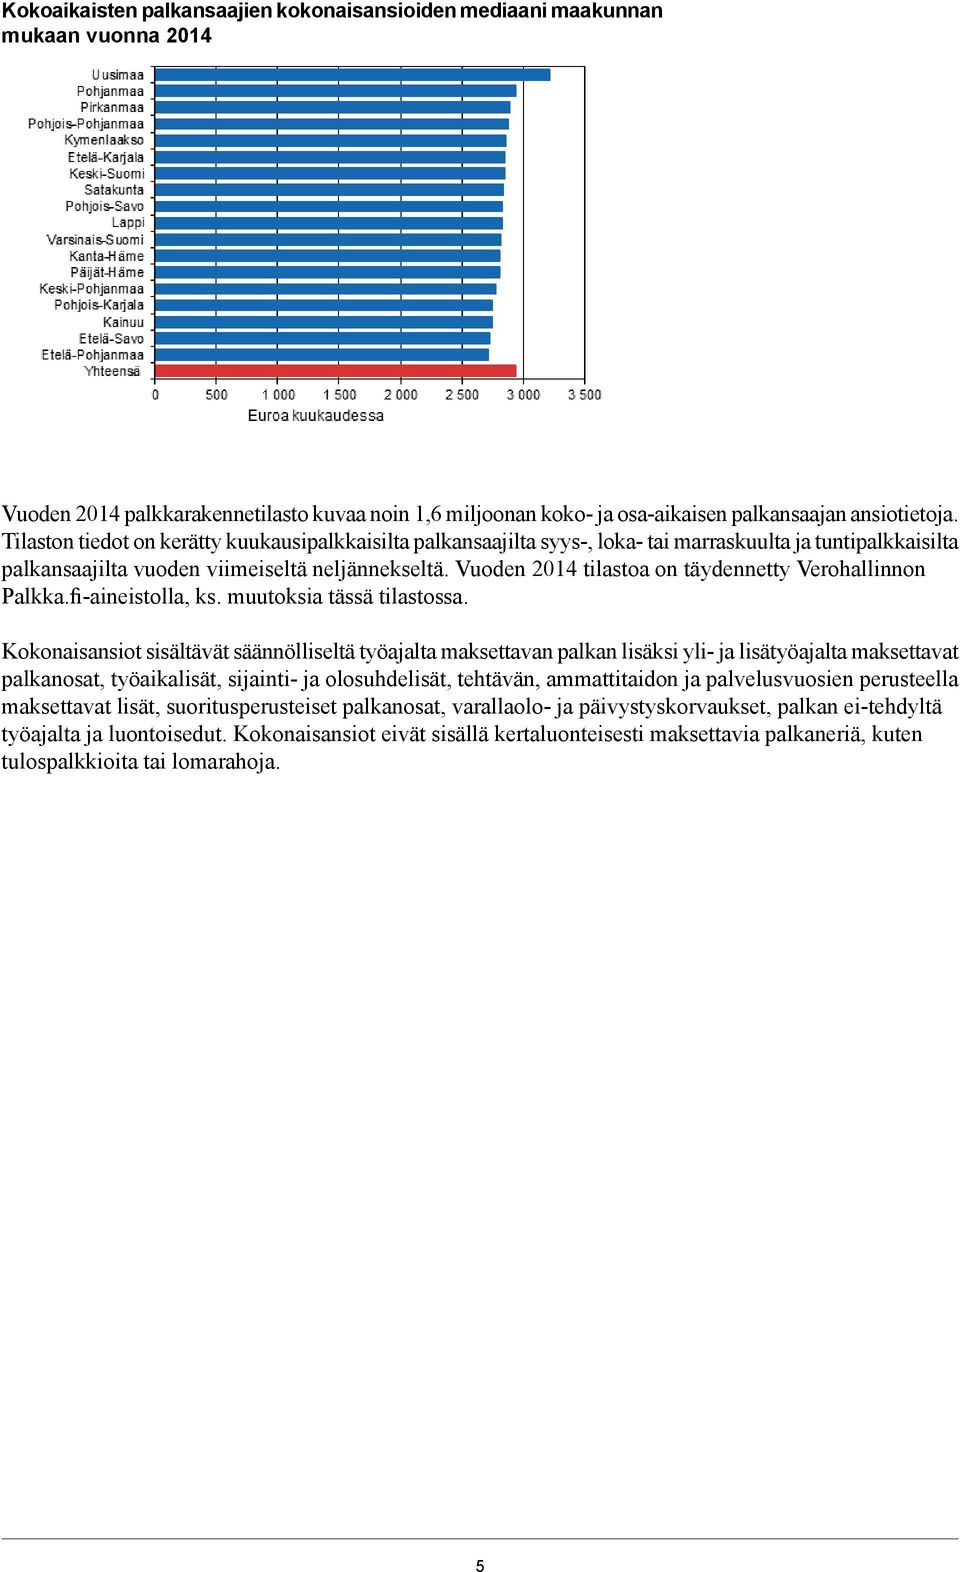 Vuoden 2014 tilastoa on täydennetty Verohallinnon Palkka.fi-aineistolla, ks. muutoksia tässä tilastossa.